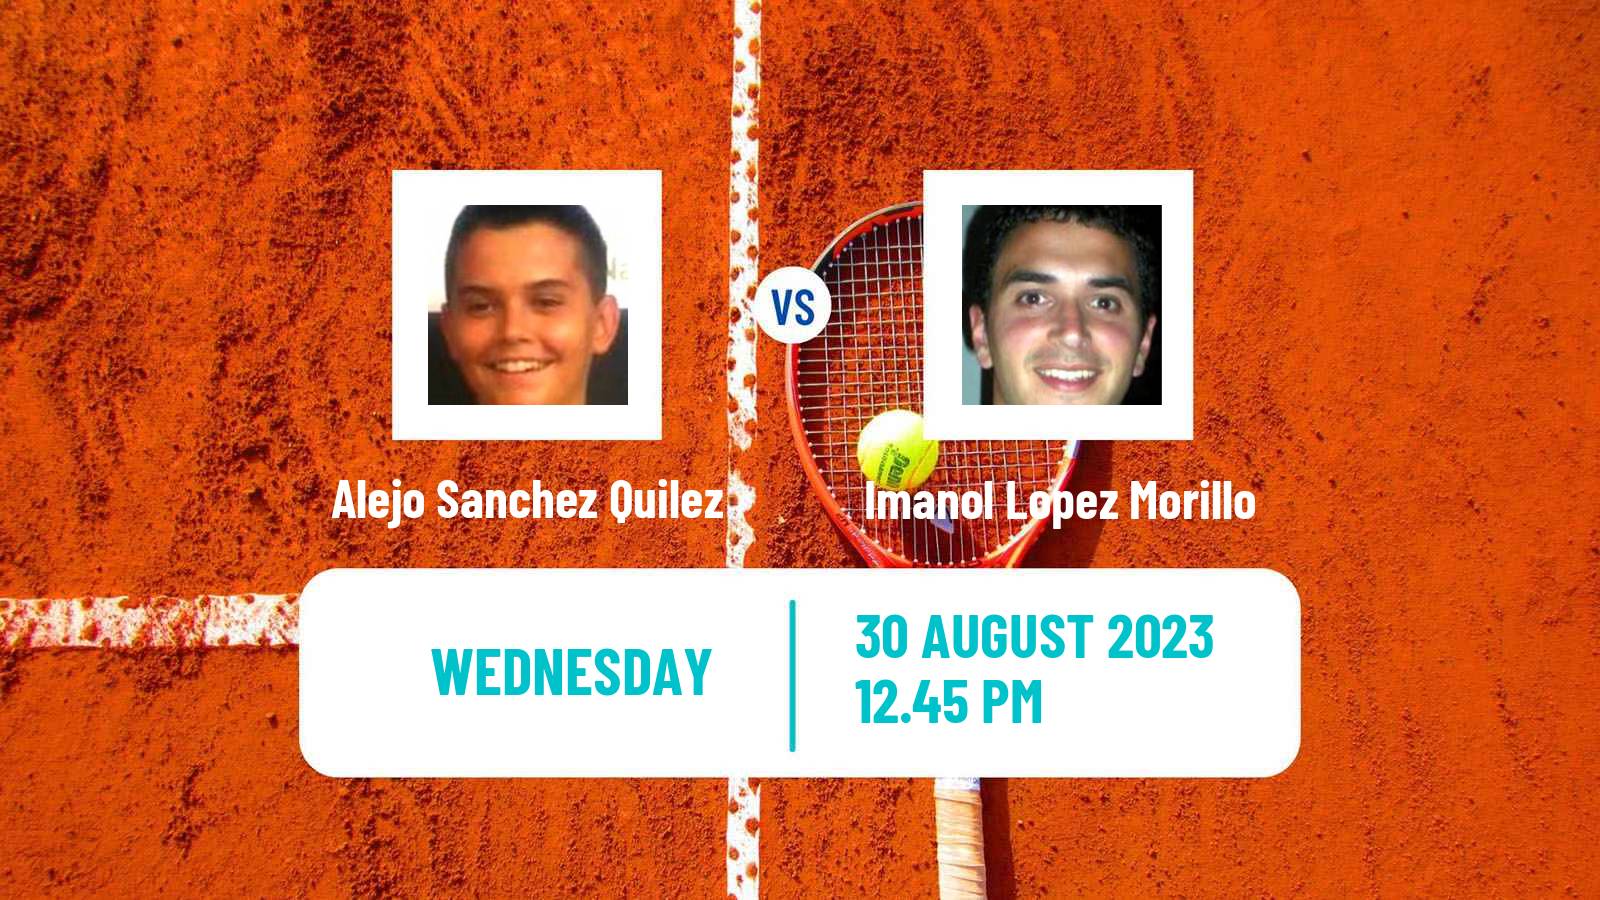 Tennis ITF M25 Oviedo Men Alejo Sanchez Quilez - Imanol Lopez Morillo